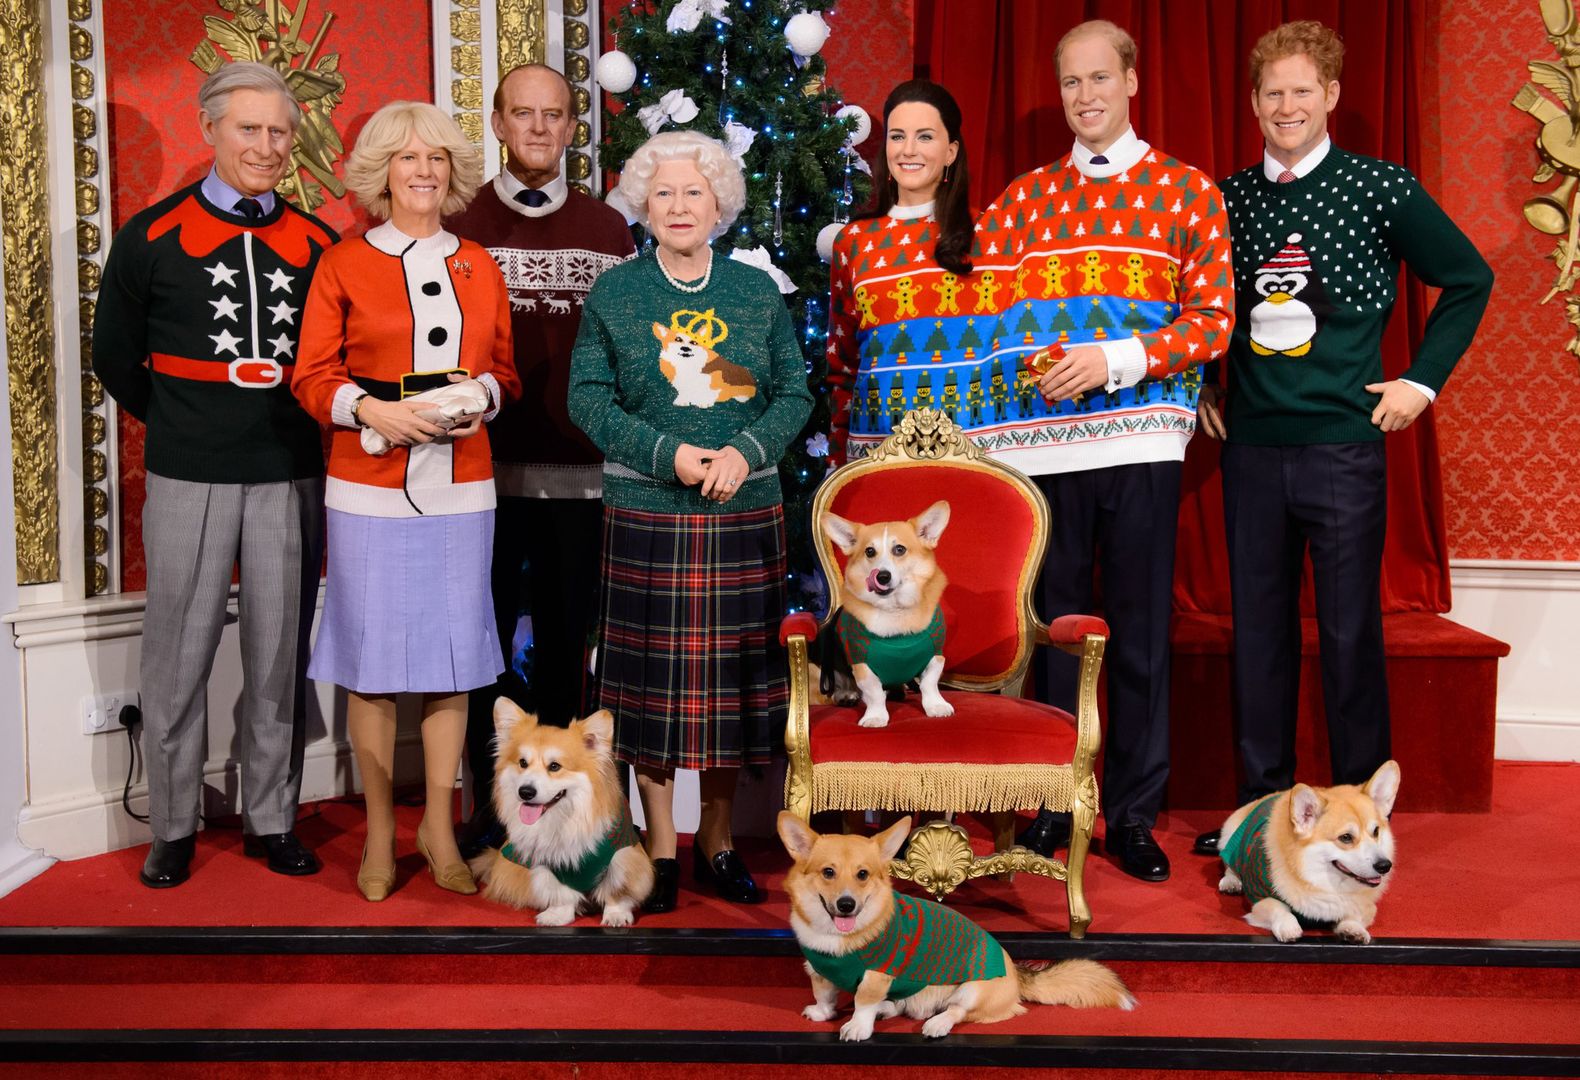 Rodzina królewska w świątecznych swetrach. Cel jest szczytny